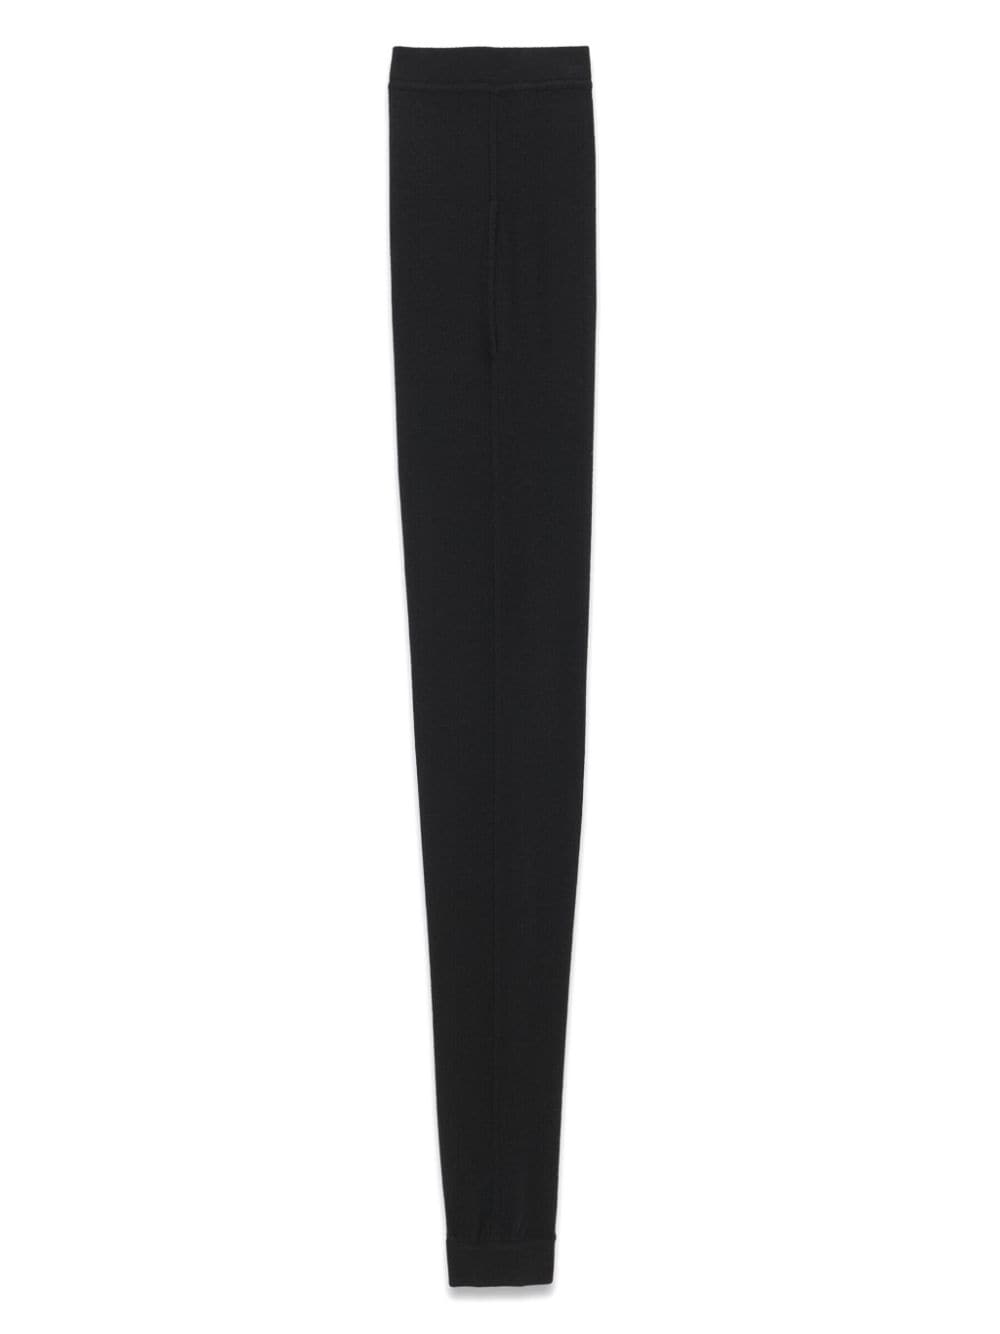 SAINT LAURENT Luxurious Black Cashmere Leggings for Women